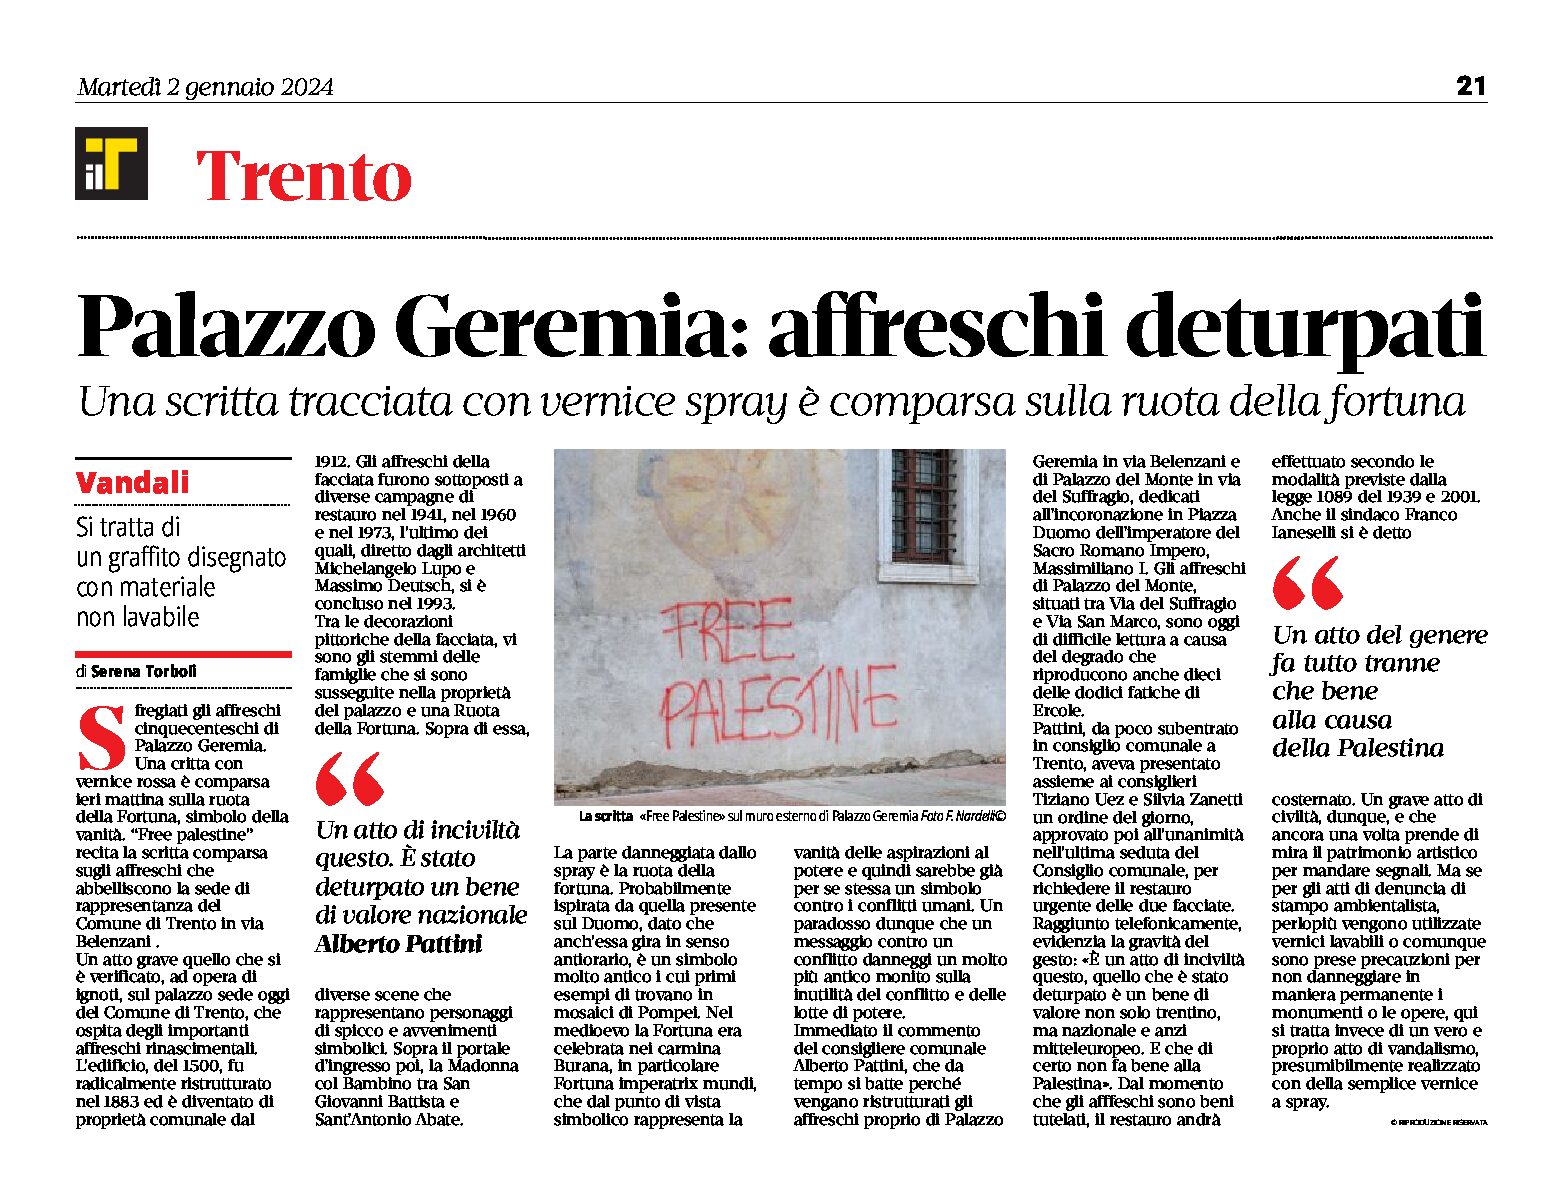 Trento, palazzo Geremia: affreschi deturpati da una scritta tracciata con vernice spray